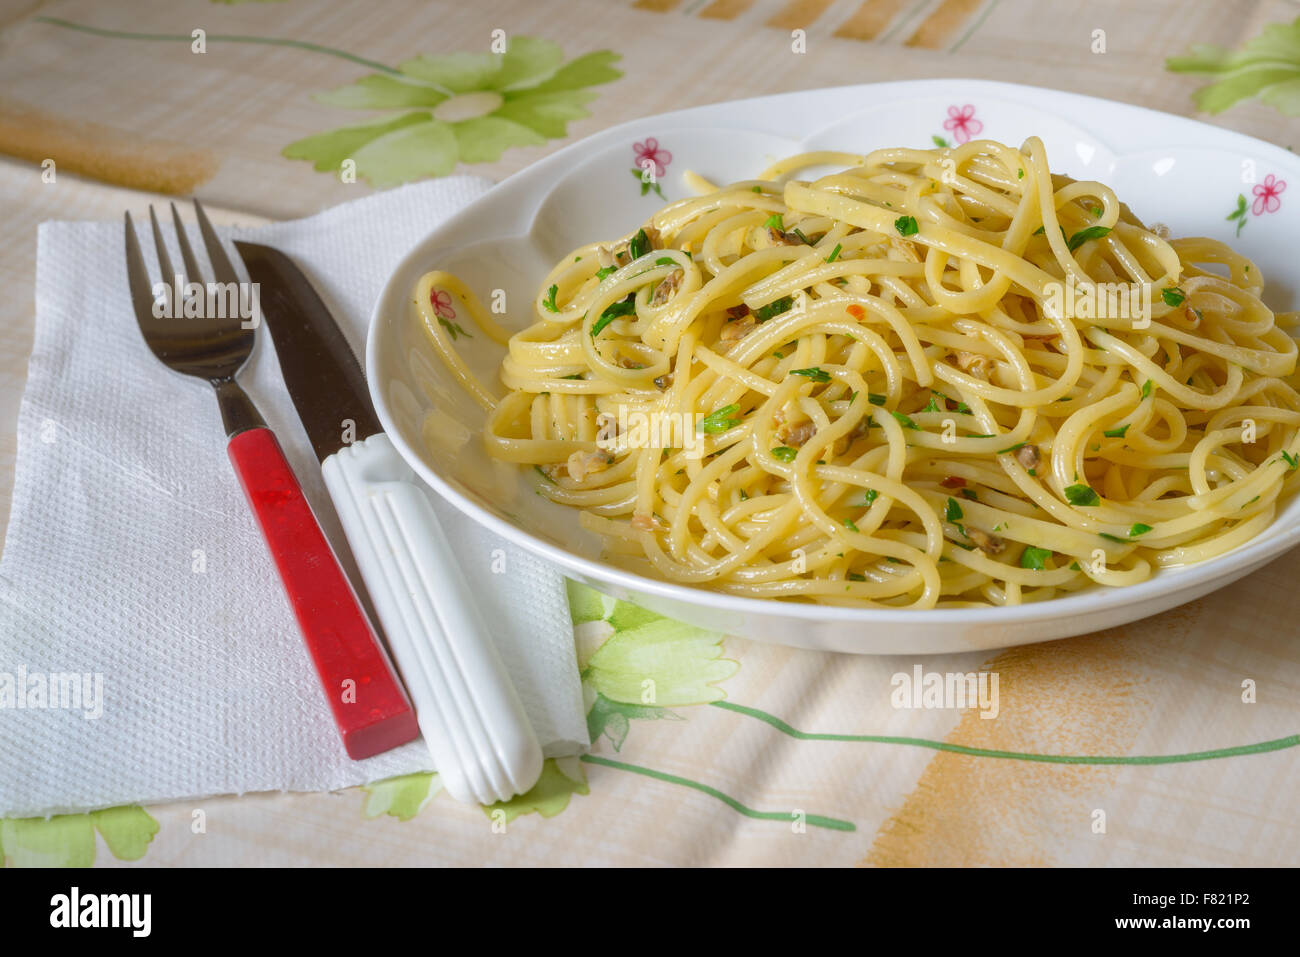 einen Teller Spaghetti Con le Vongole (Nudeln und Ansprüche) eine rote Gabel und einem weißen Messer, typisch italienischen Meeresfrüchten Stockfoto